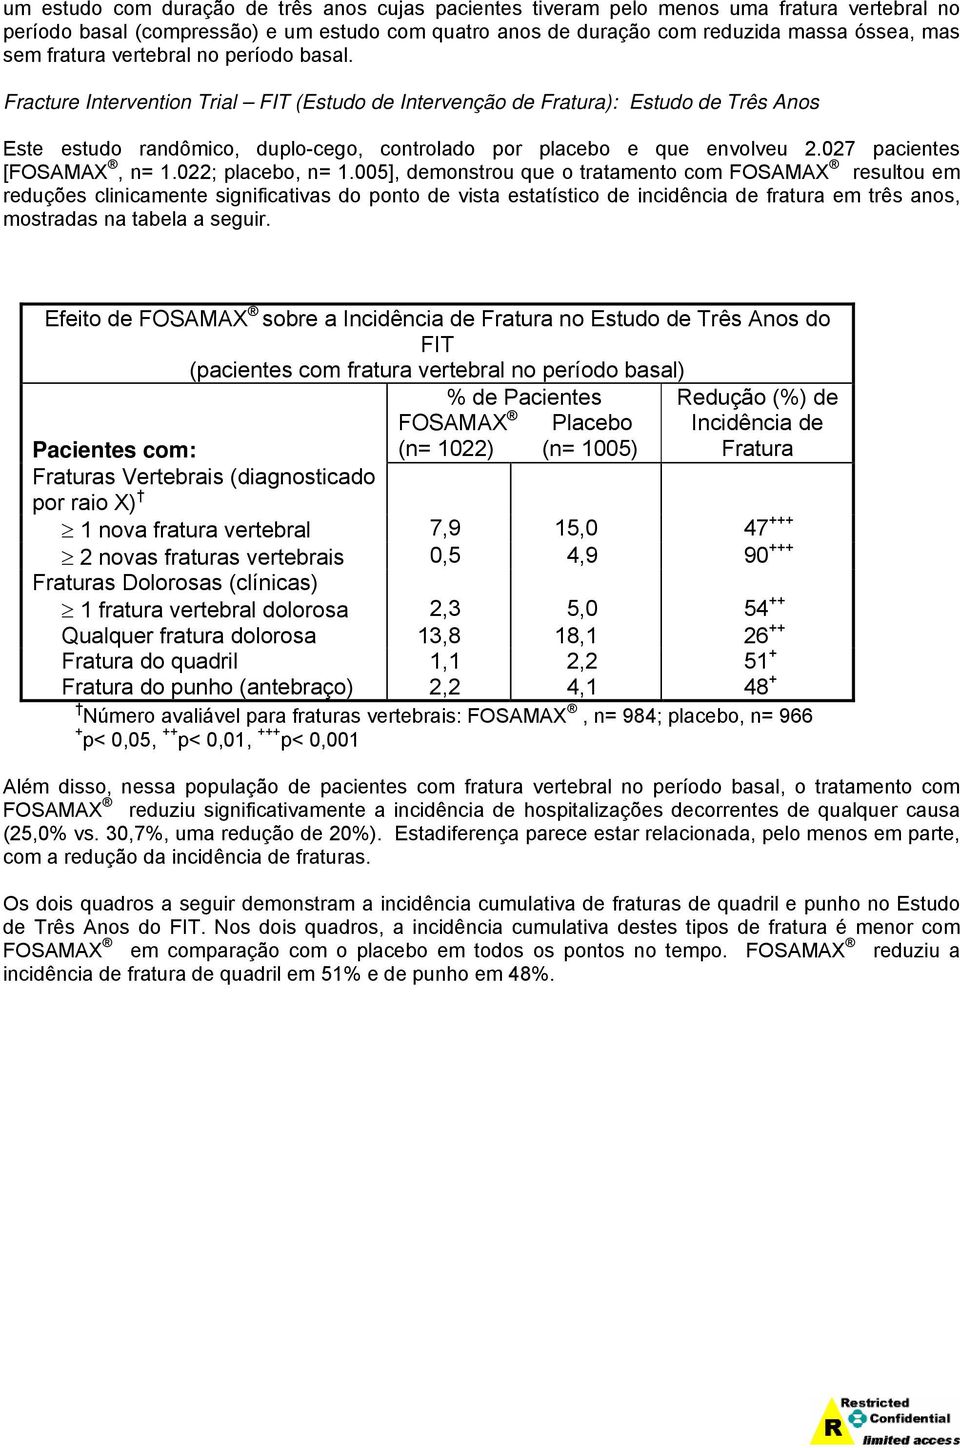 027 pacientes [FOSAMAX, n= 1.022; placebo, n= 1.